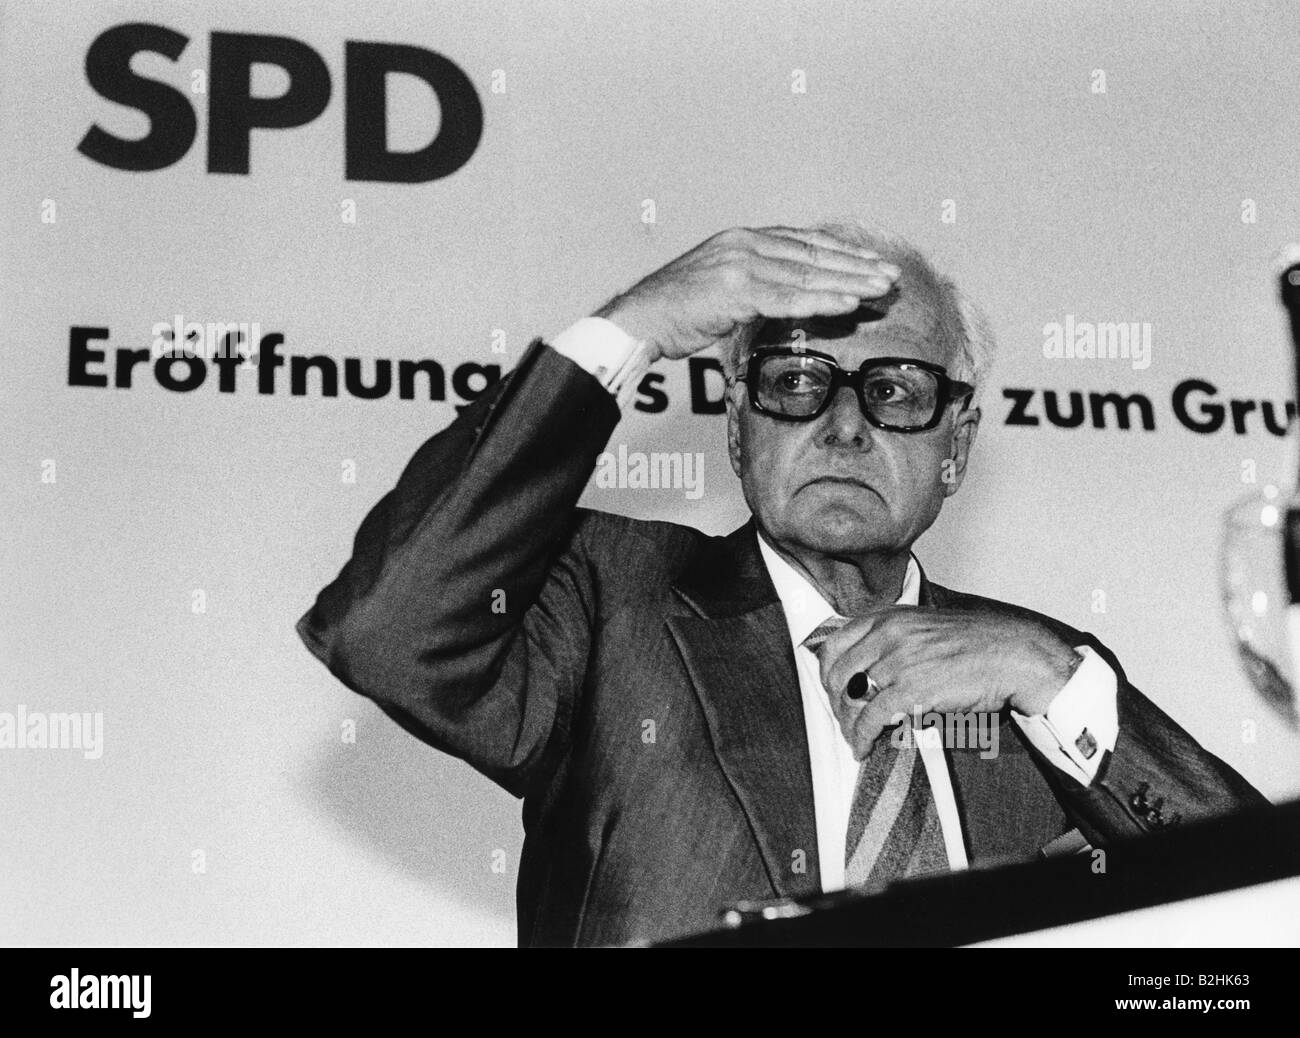 Weizsäcker, Carl Friedrich von, 28.6.1912 - 28.4.2007, German scientist (physics) and philosopher, half length, at event, Dialog zu Grundsatzprogramm der SPD, (dialogue on SPD party manifesto), Künstlerhaus am Lenbachplatz, Munich, 18.9.1987, Stock Photo